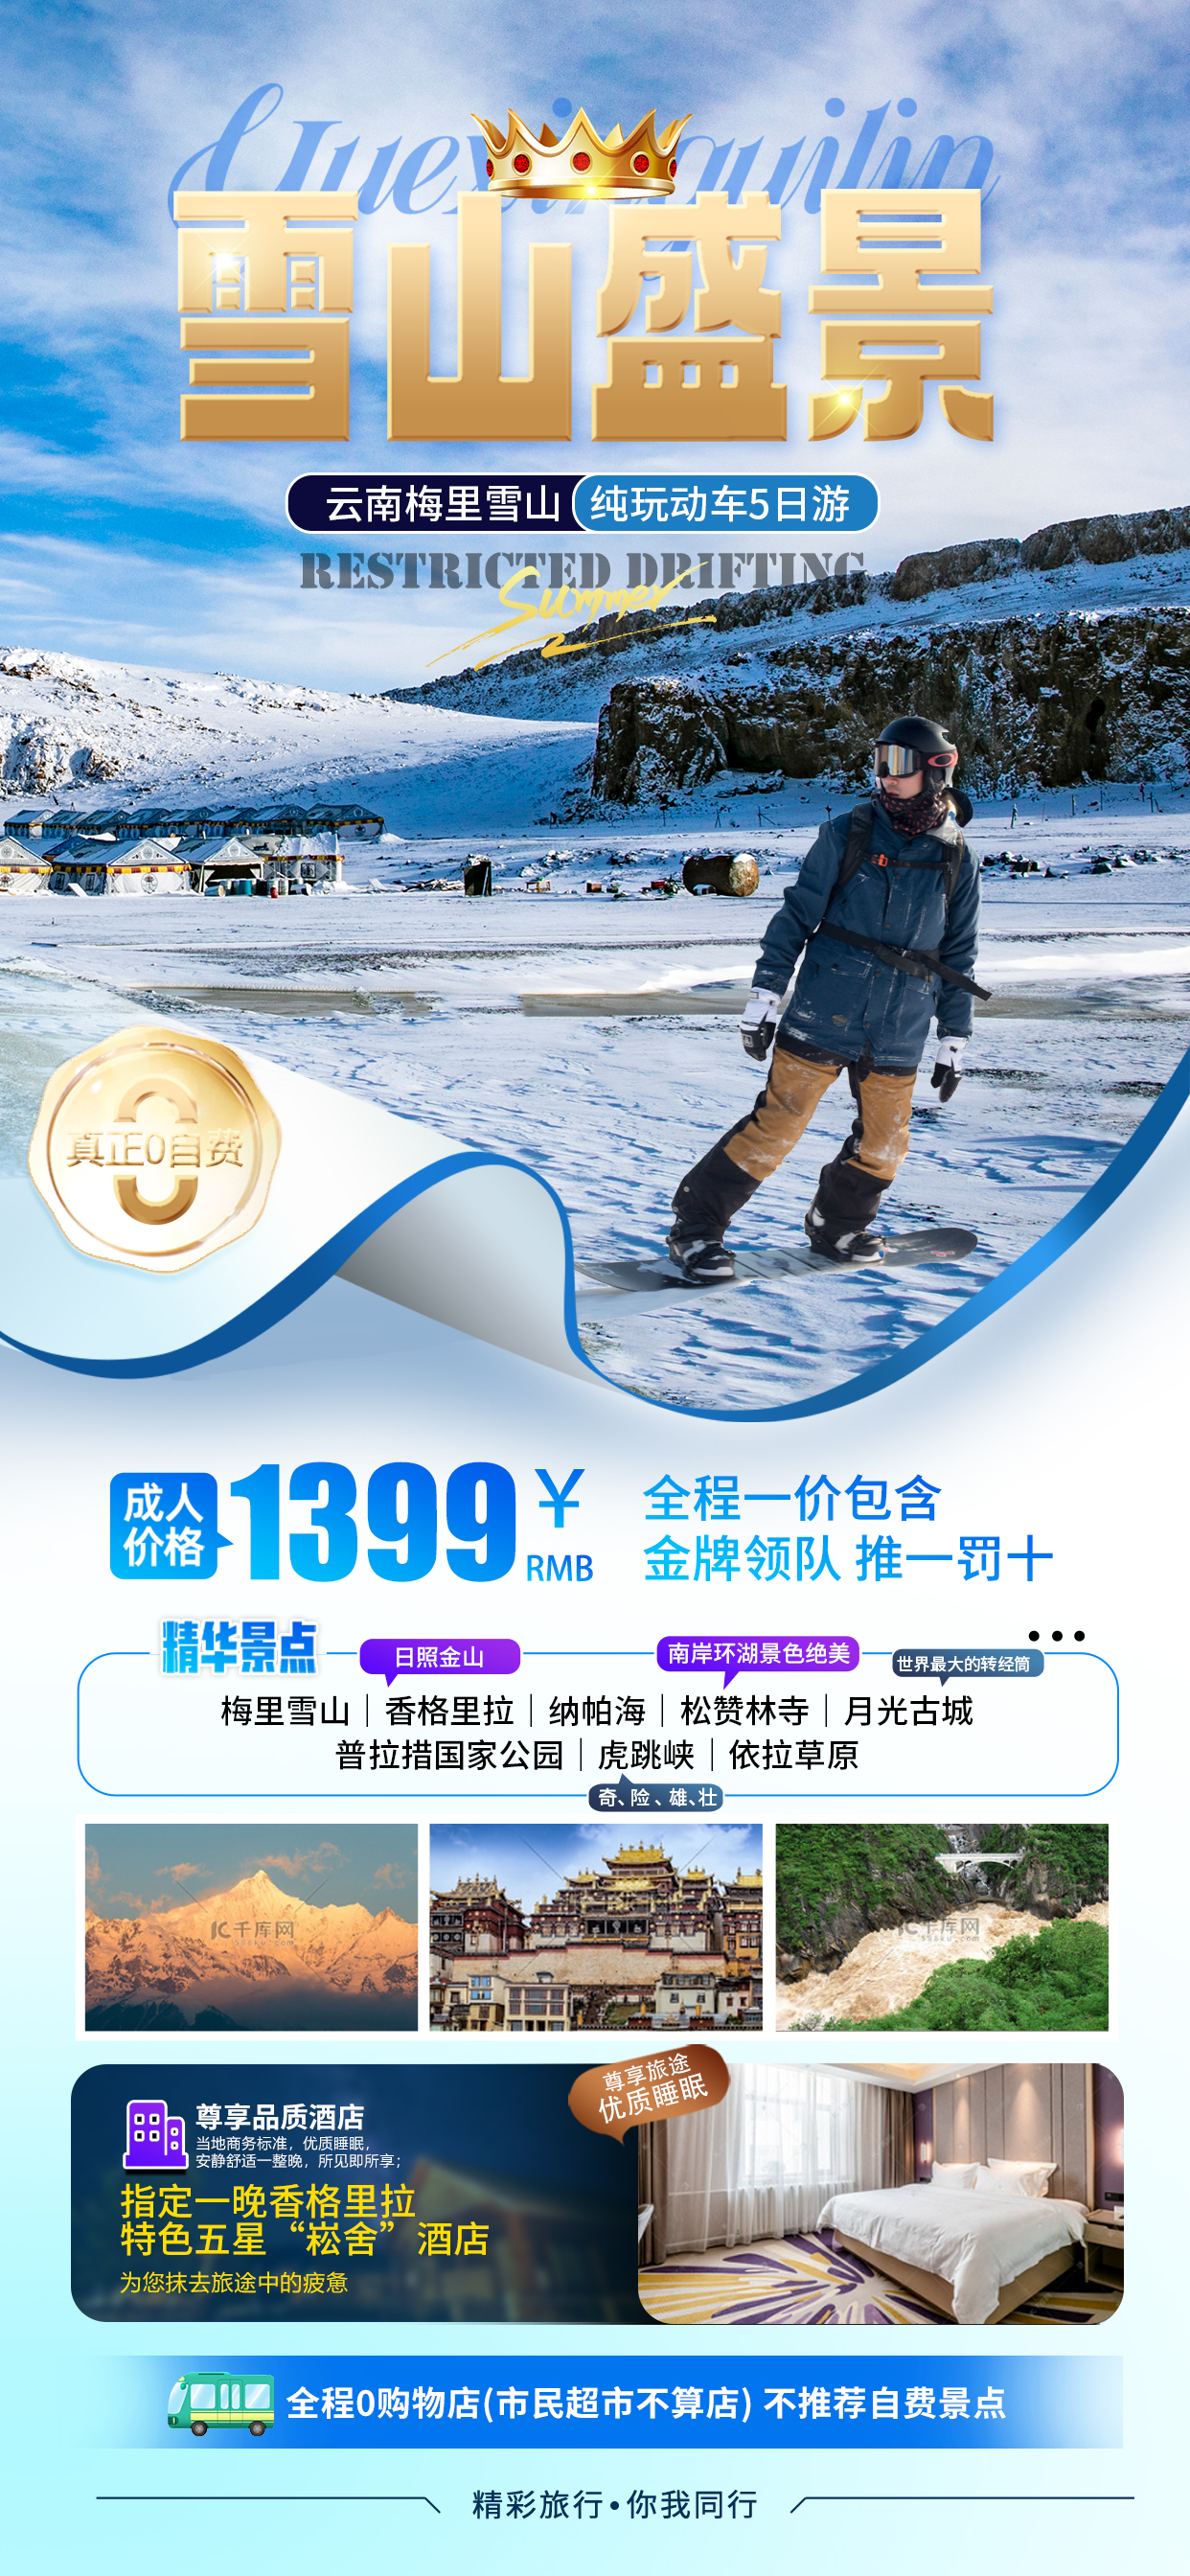 冬季旅游梅里雪山宣传蓝色旅游海报图片